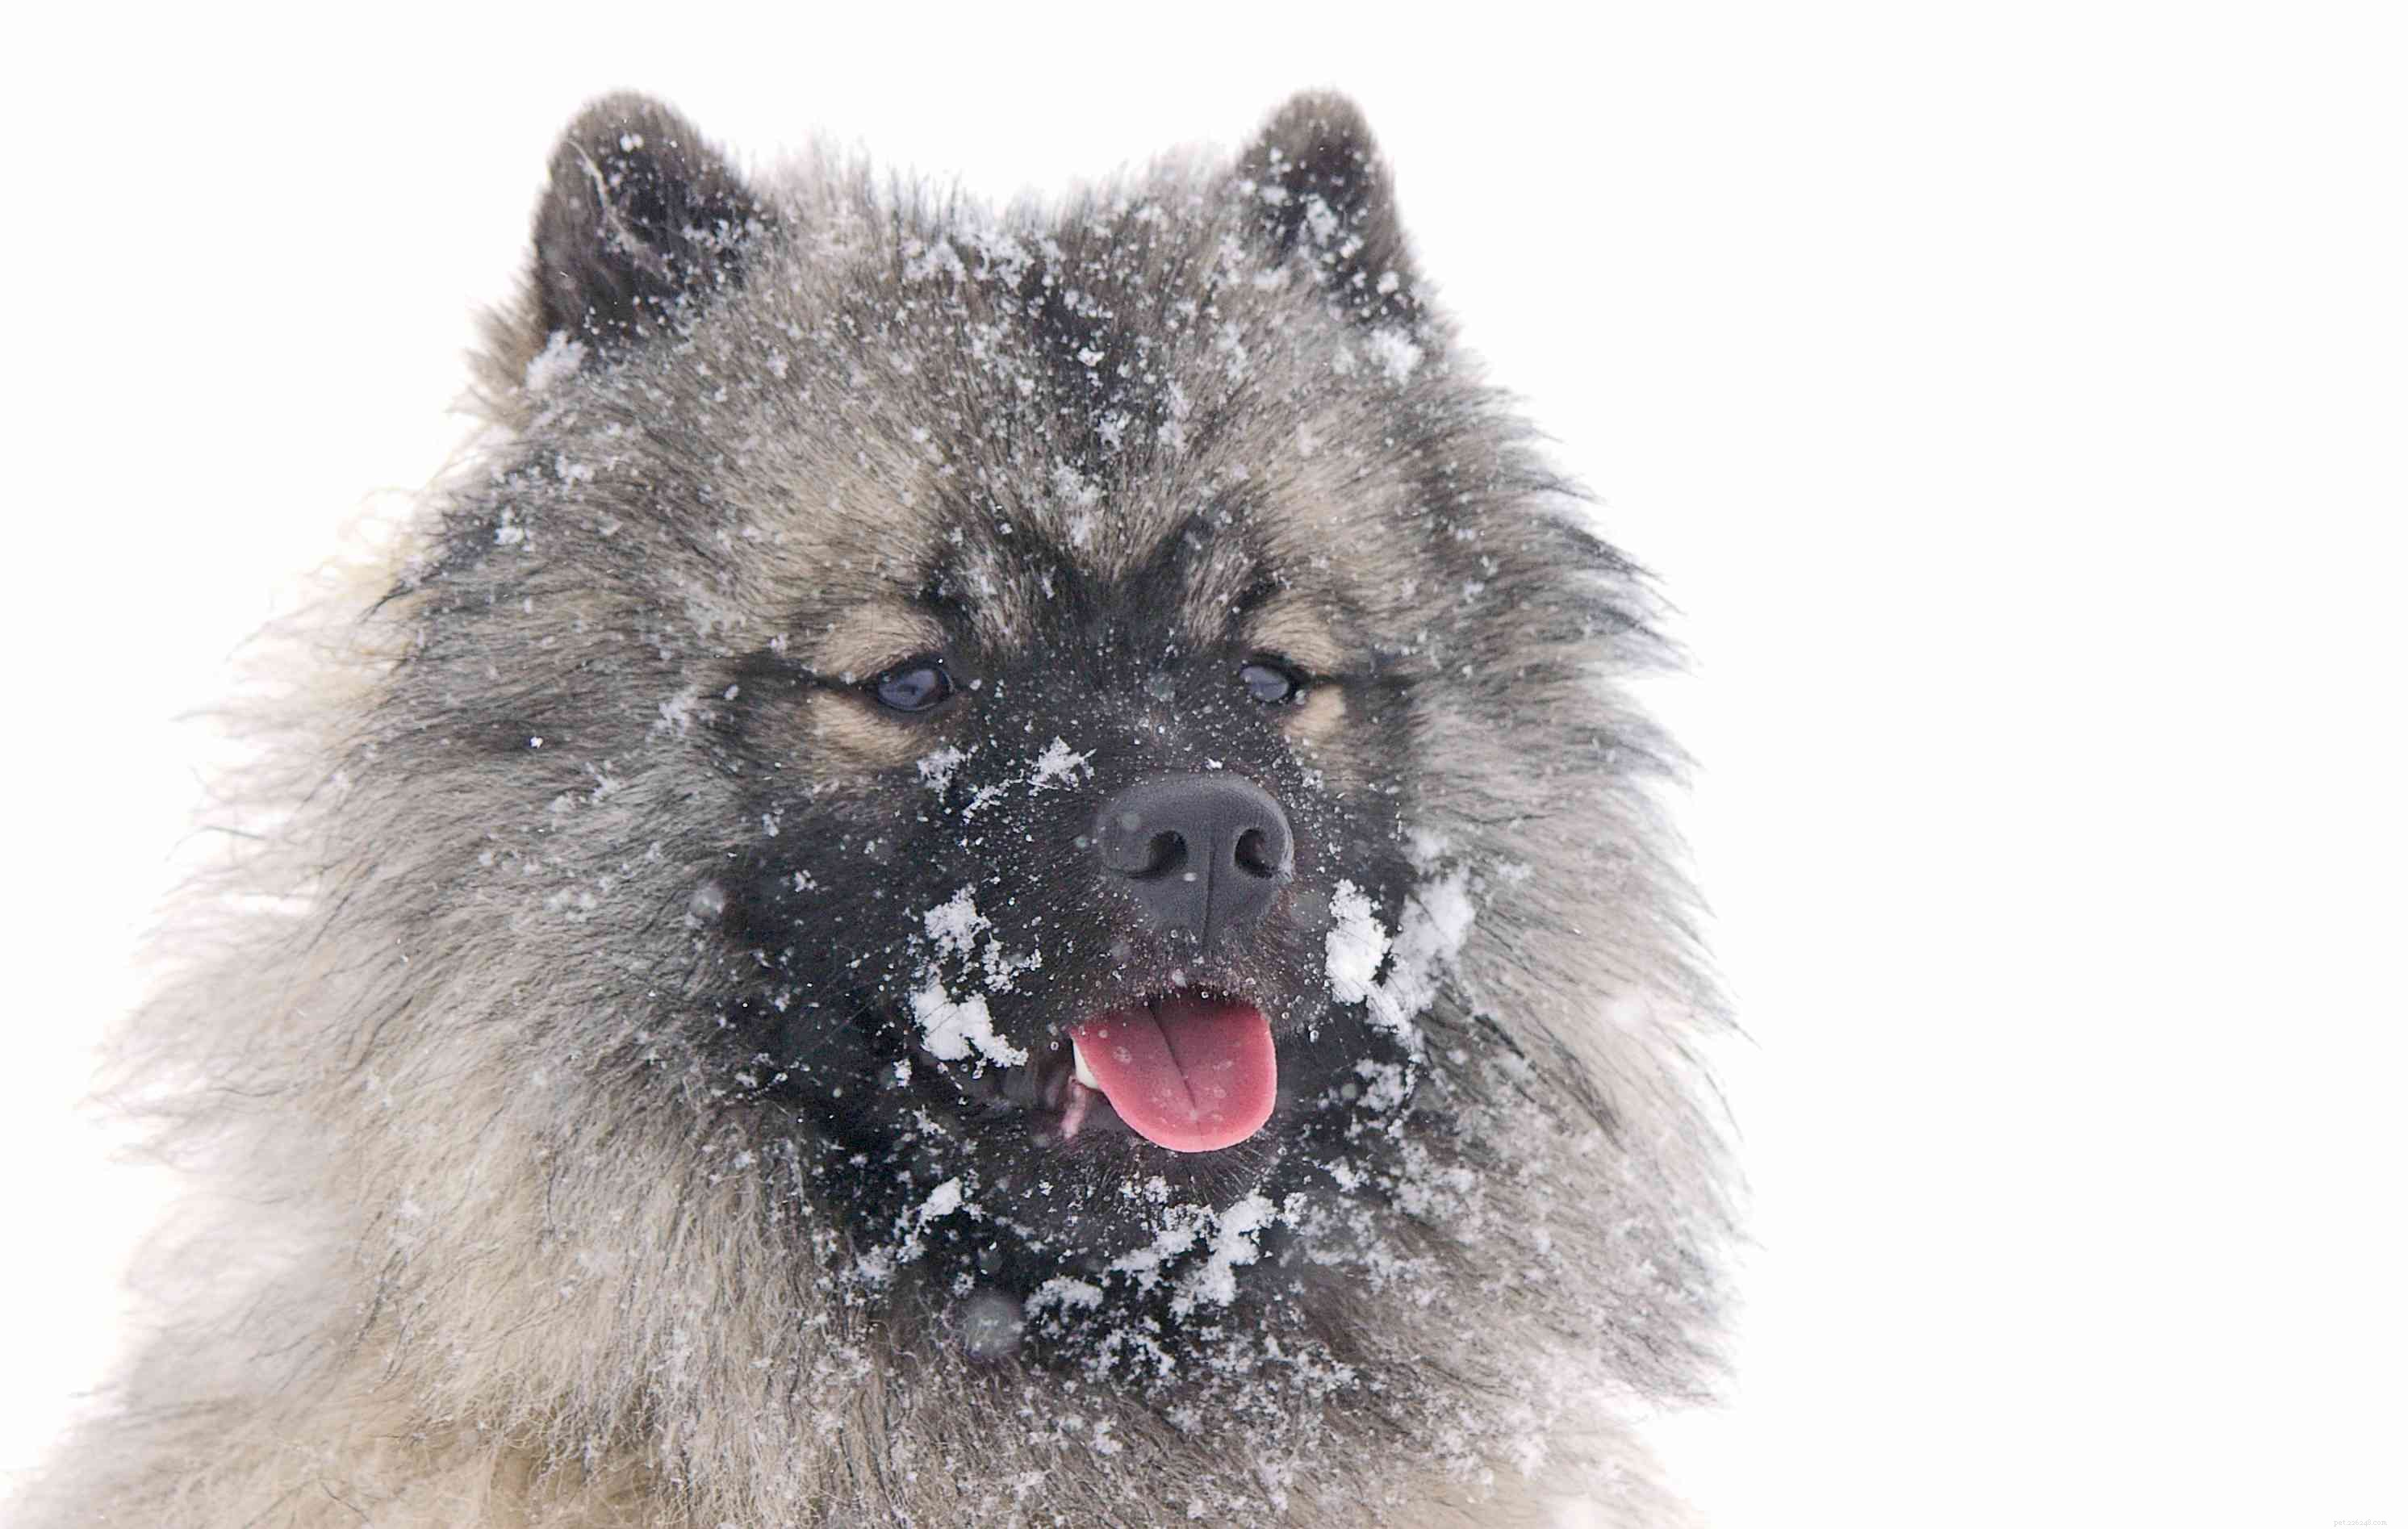 10 migliori razze di cani per il freddo